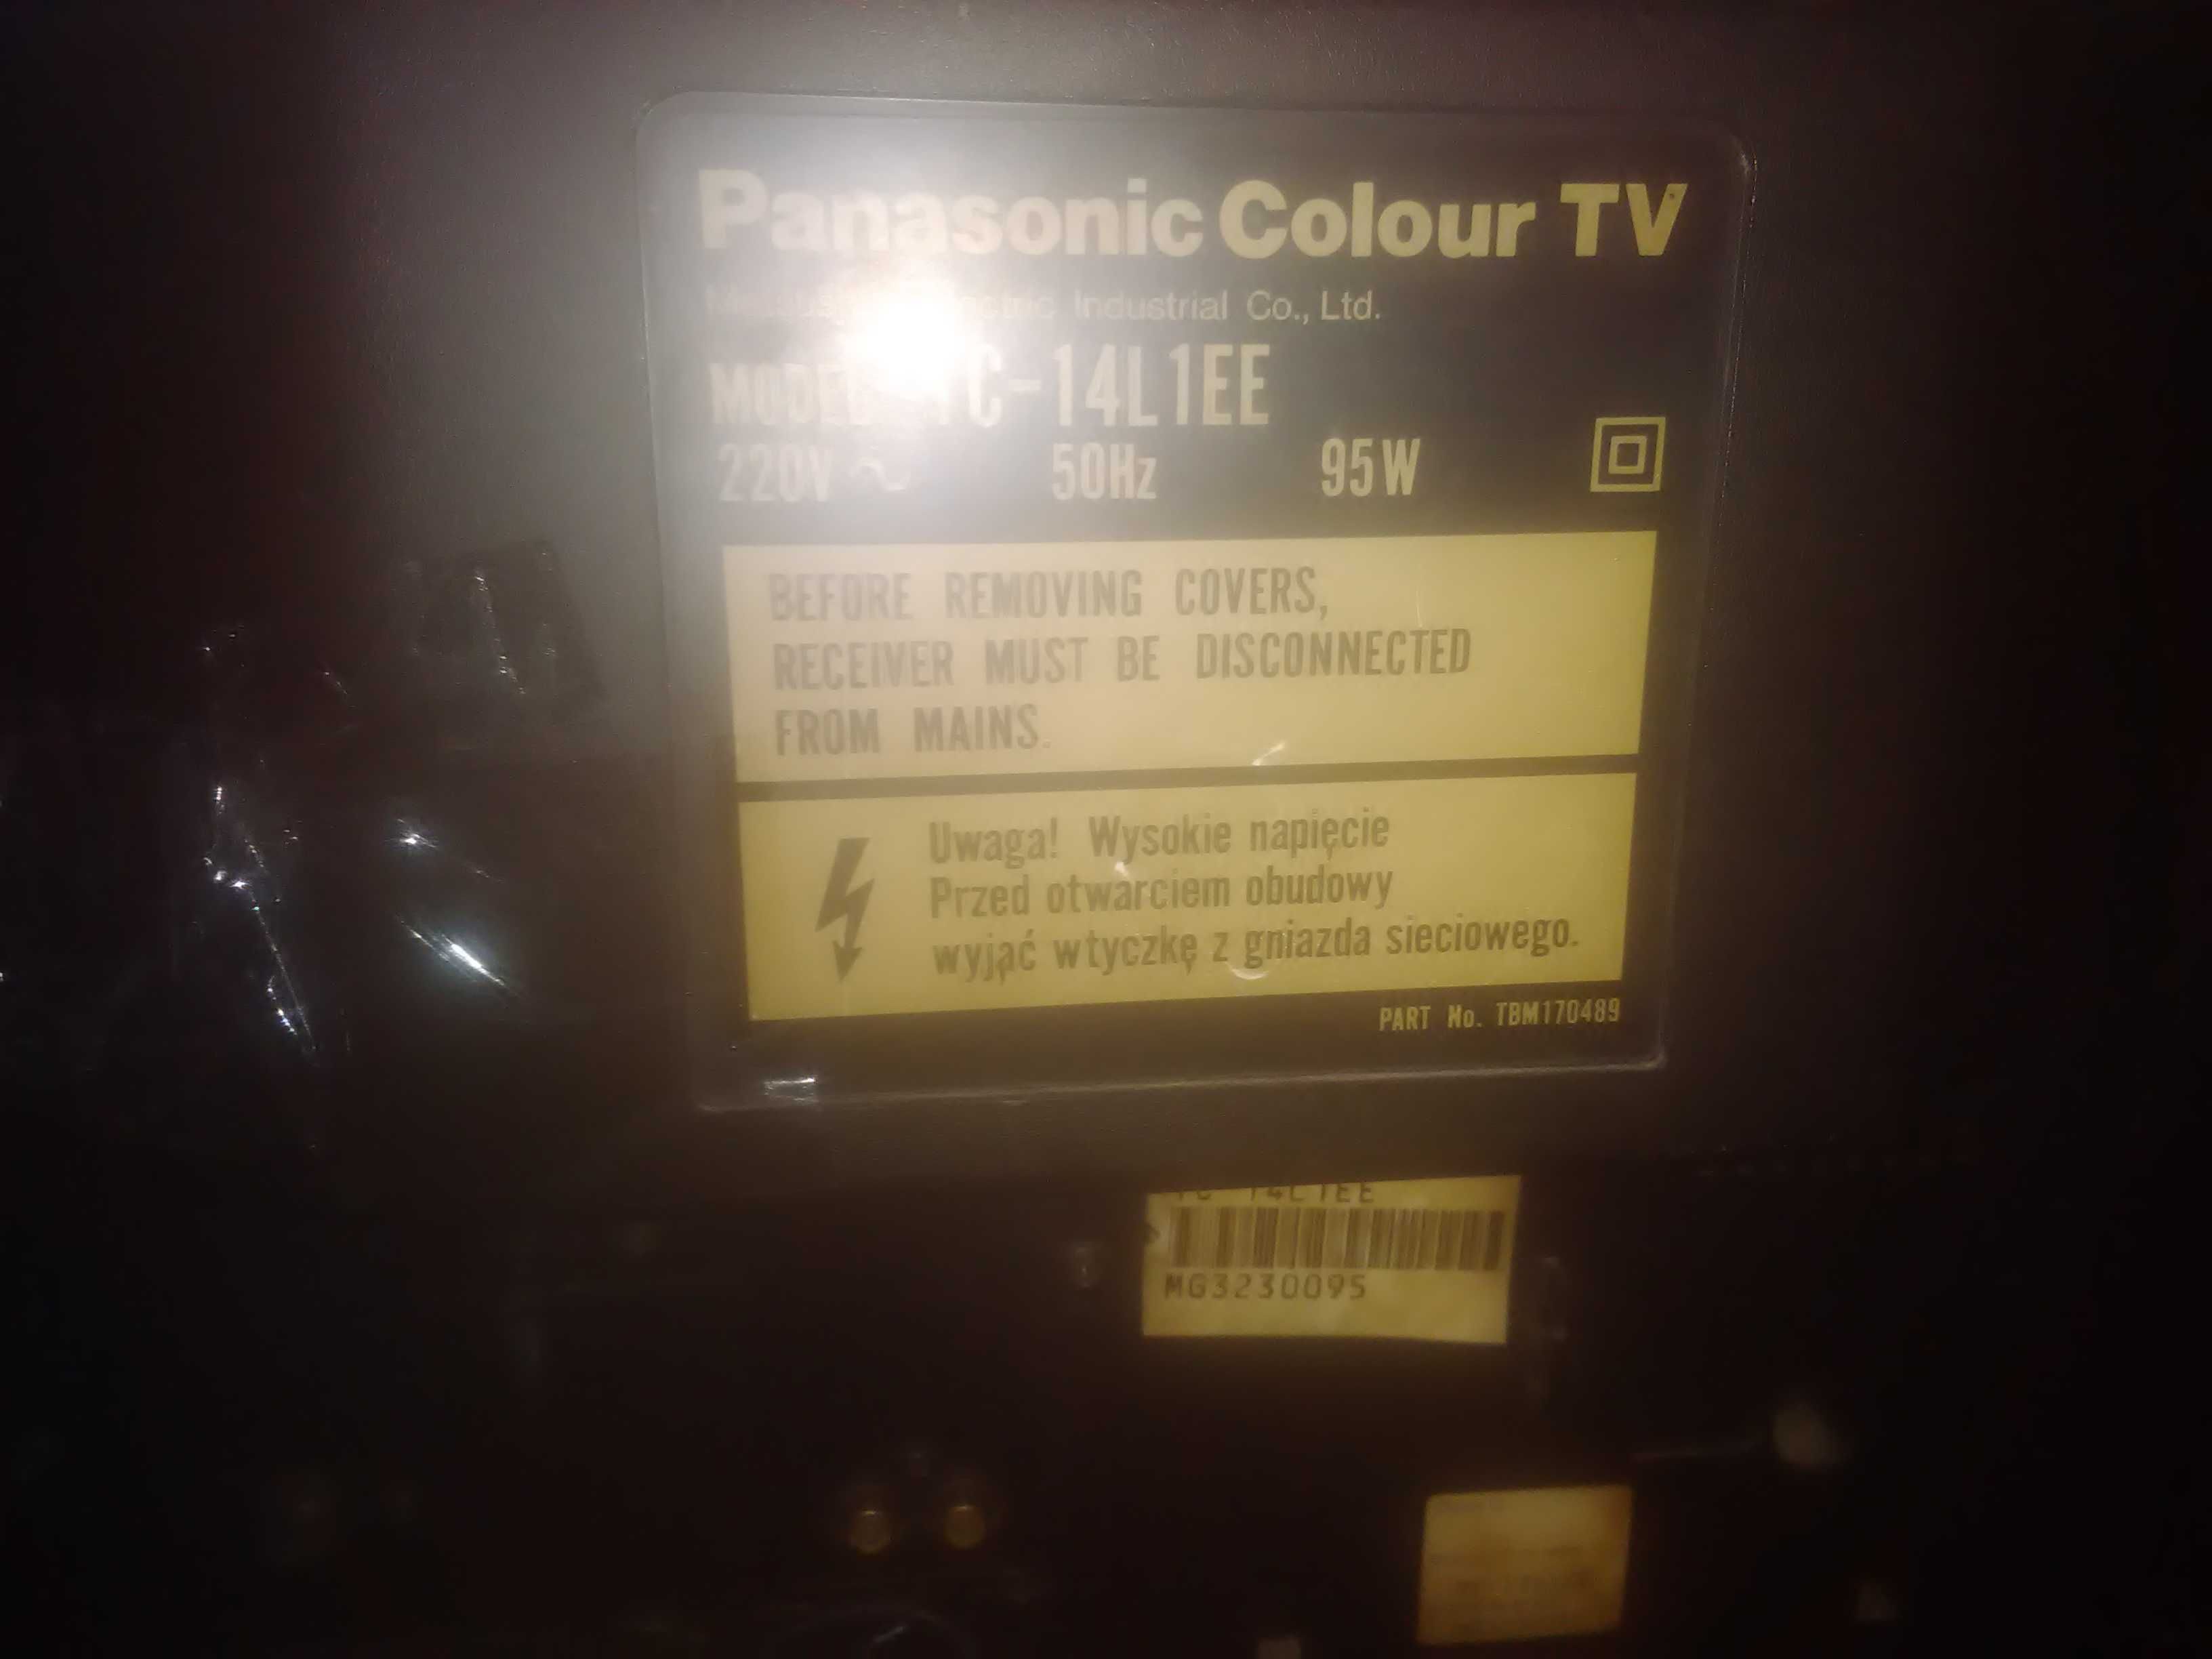 Продавам Panasonic colour TV TC-14L1EE, 14 inches (35.56 cm)